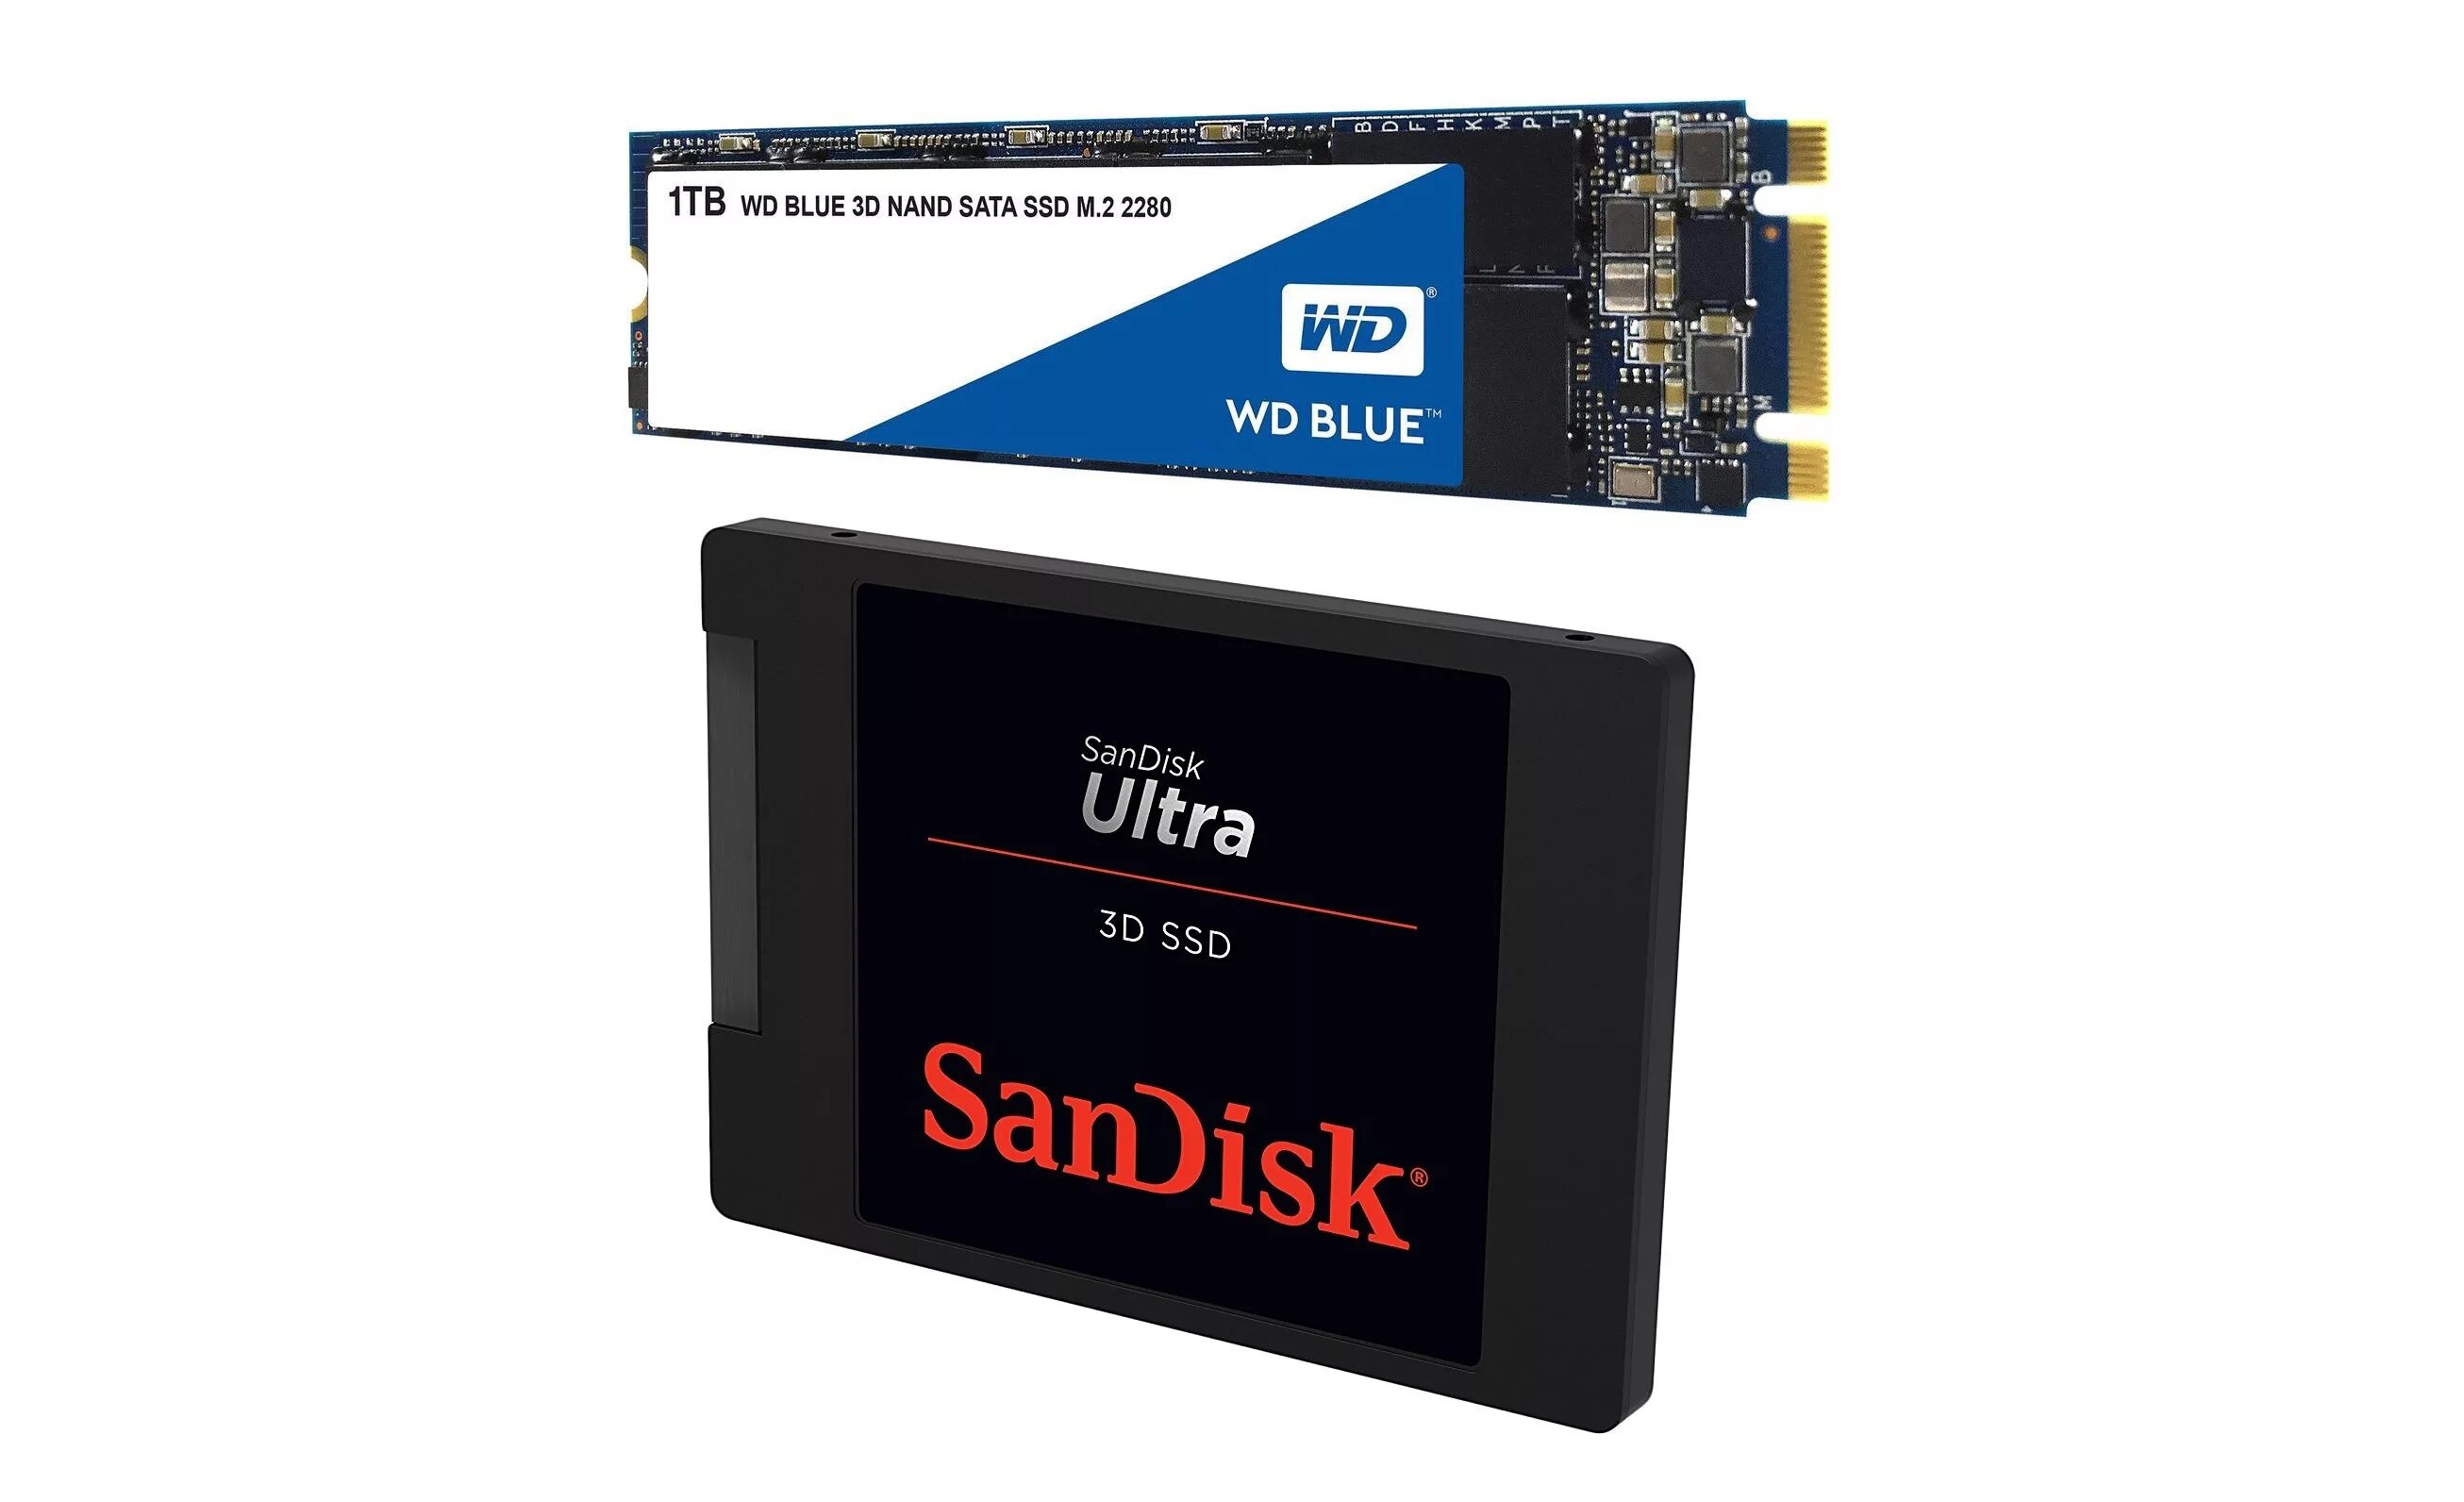 Solid State Drive SSD 1 TB. SATA SSD 1tb. Blue SSD 2280 1tb. SANDISK Solid State Drive 1tb.